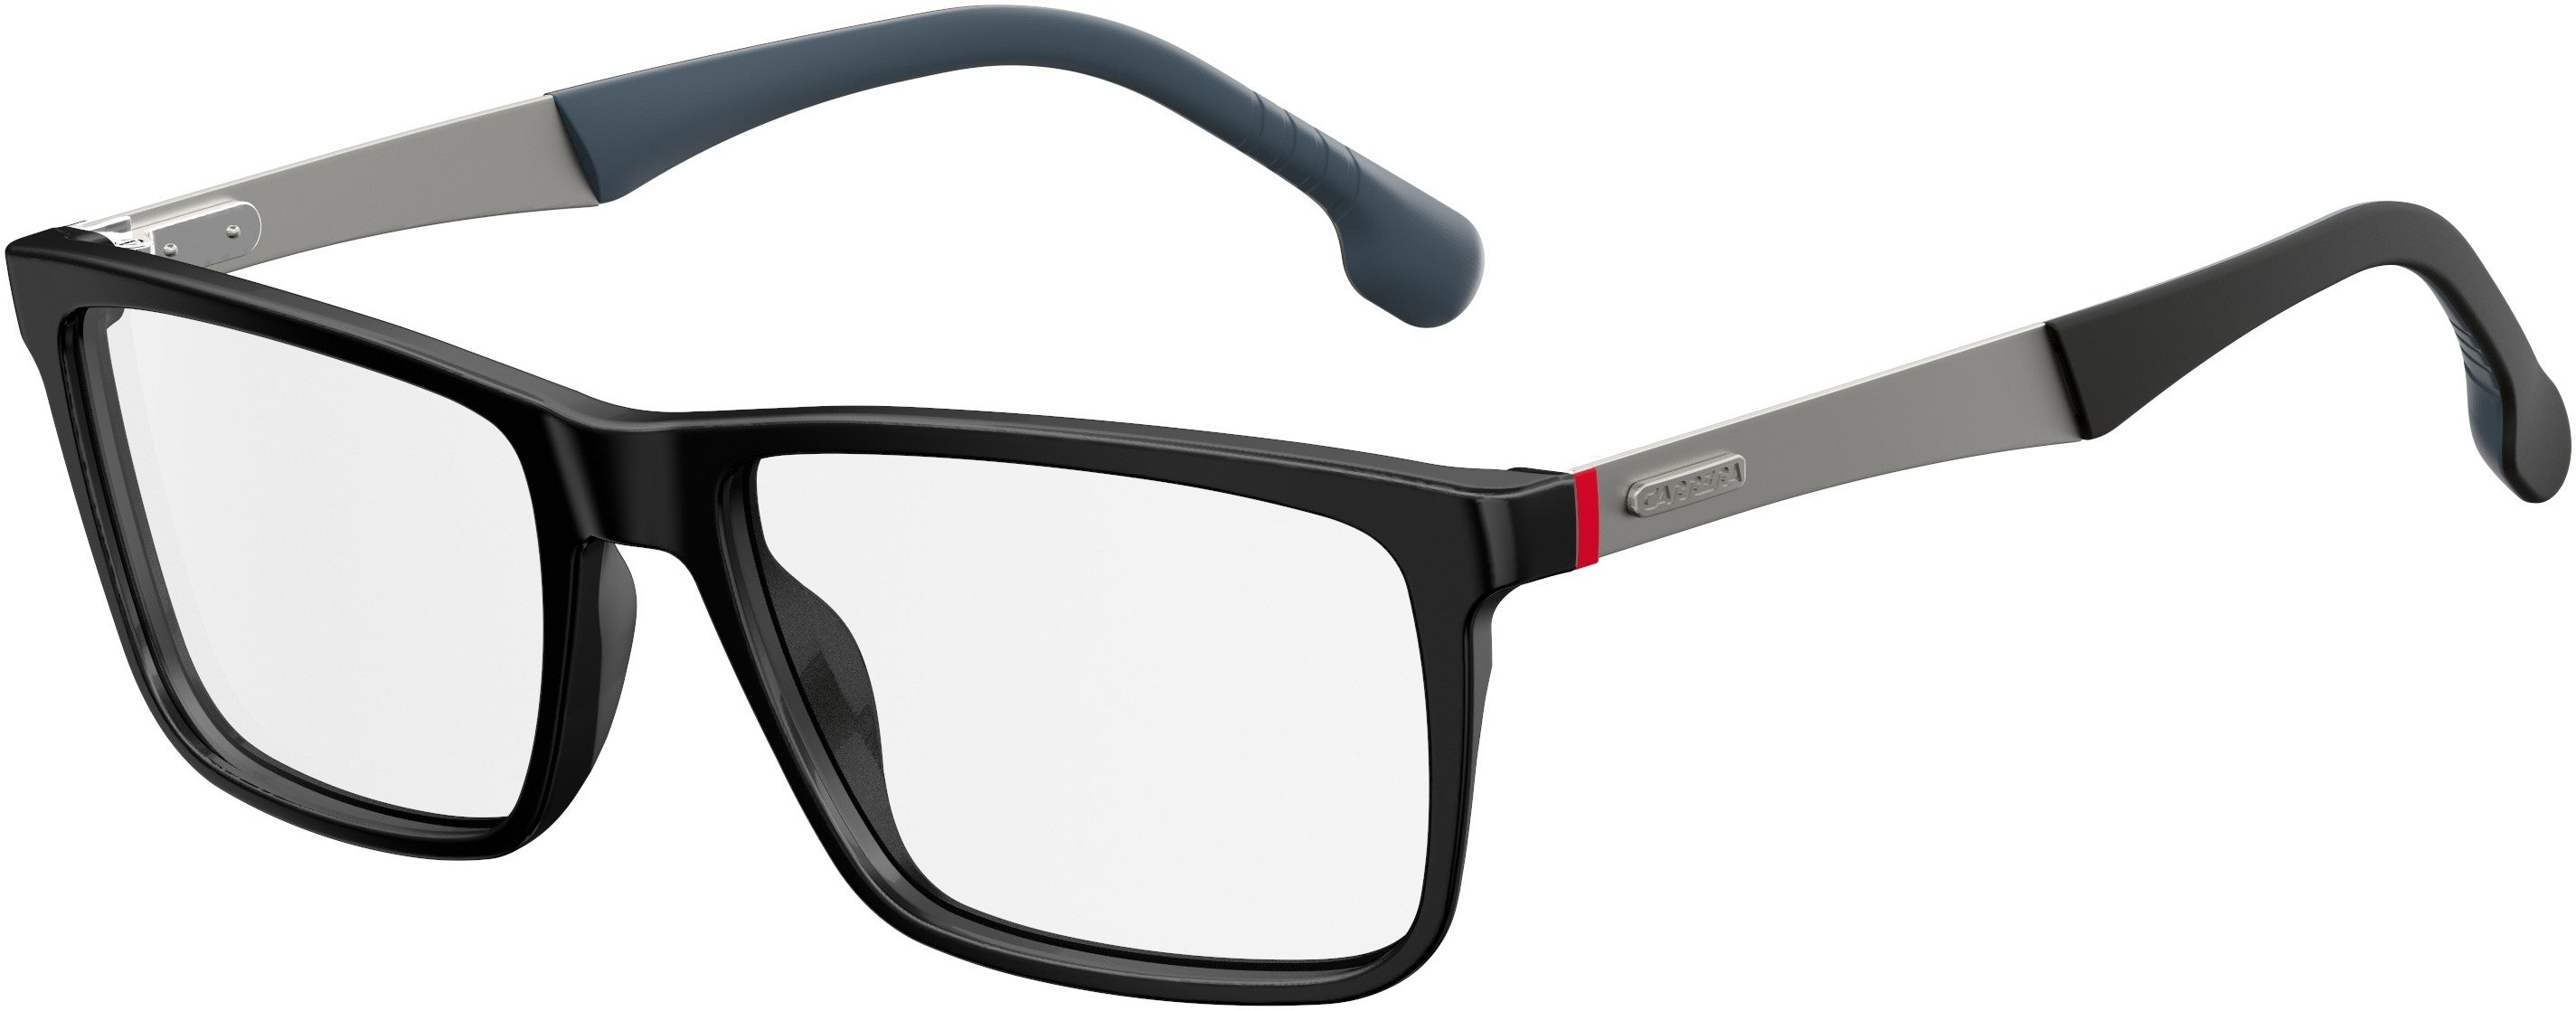  Carrera 8825/V Rectangular Eyeglasses 0807-0807  Black (00 Demo Lens)